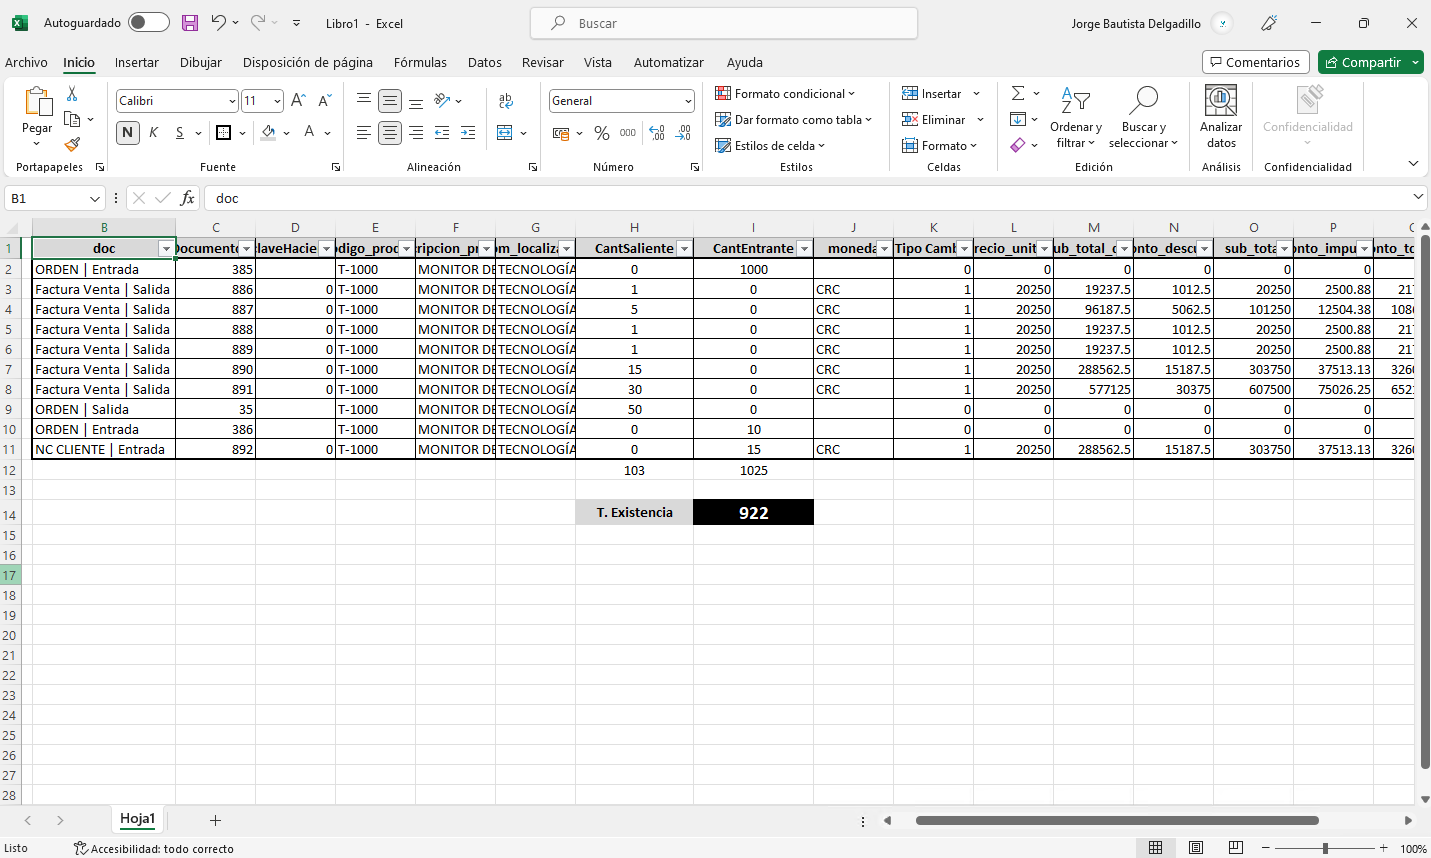 Interfaz de usuario gráfica, Aplicación, Tabla, Excel

Descripción generada automáticamente